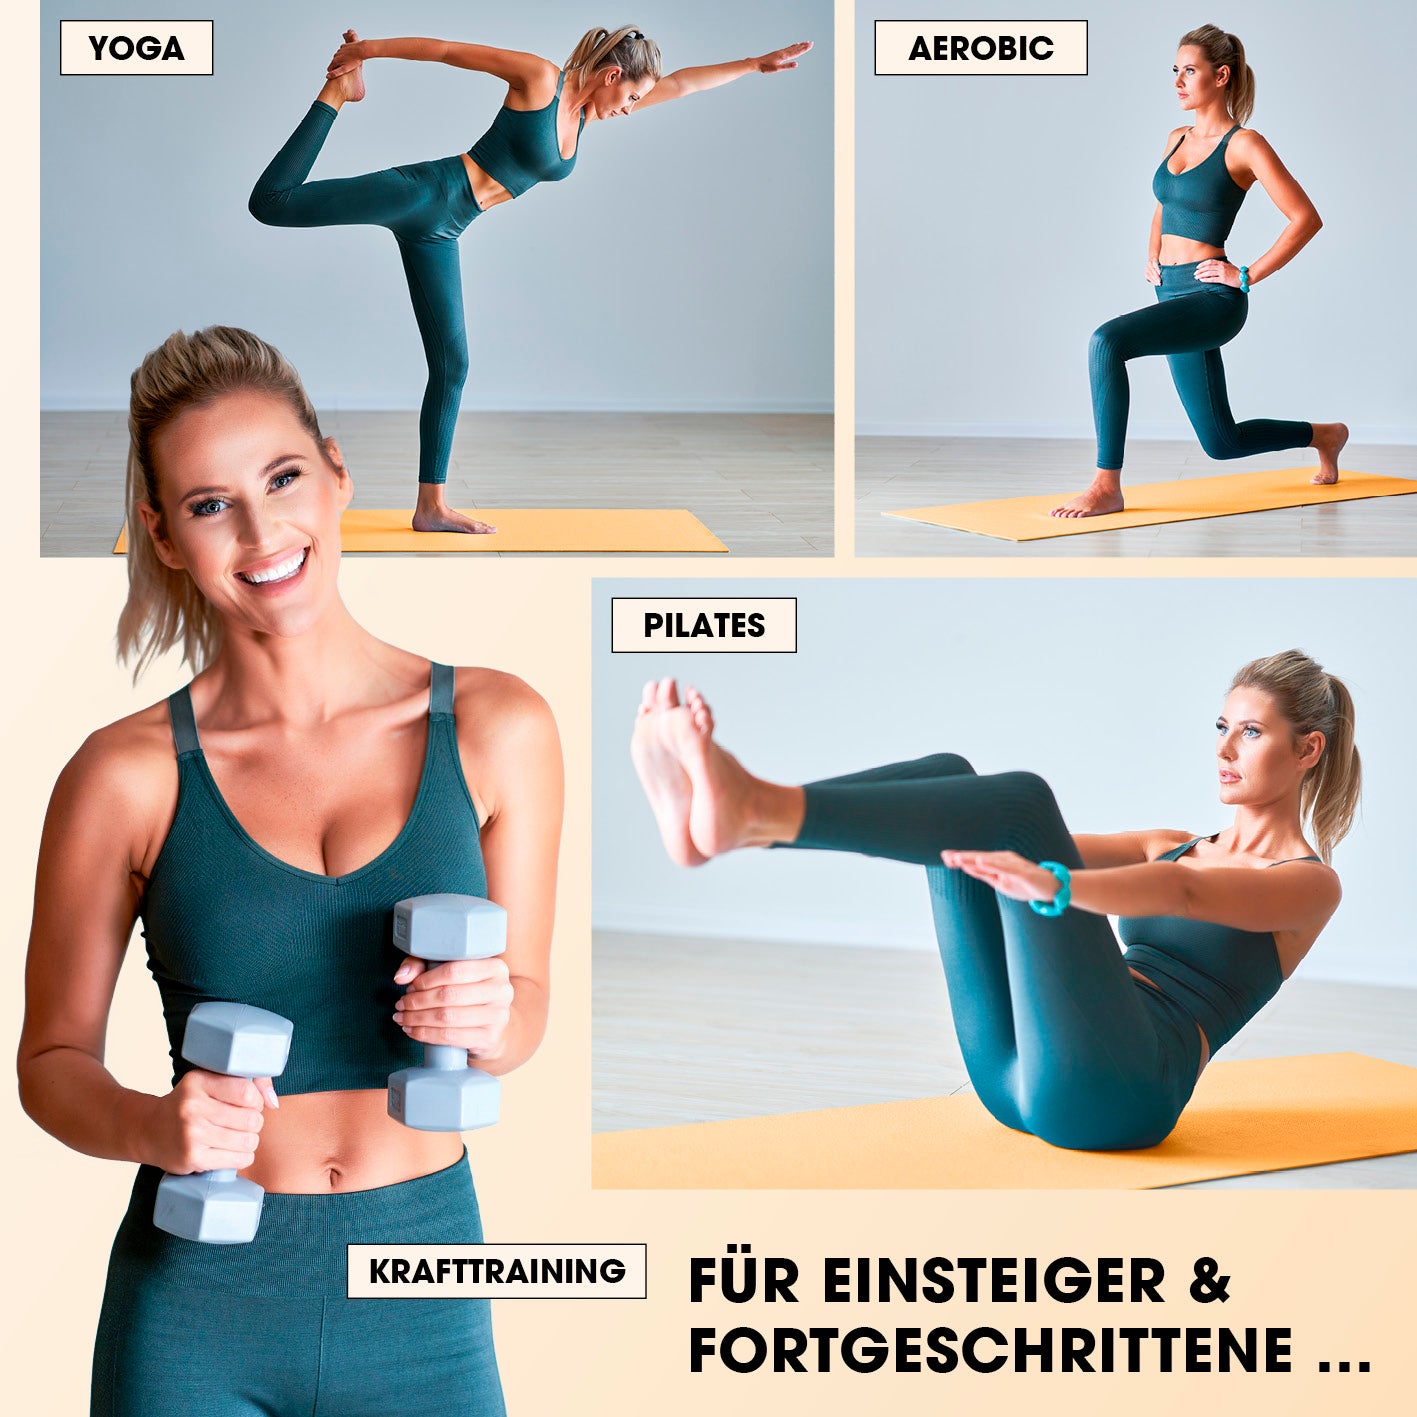 Fitness- und Gymnastikmatte - 183 x 61 x 1,5 cm - Orange